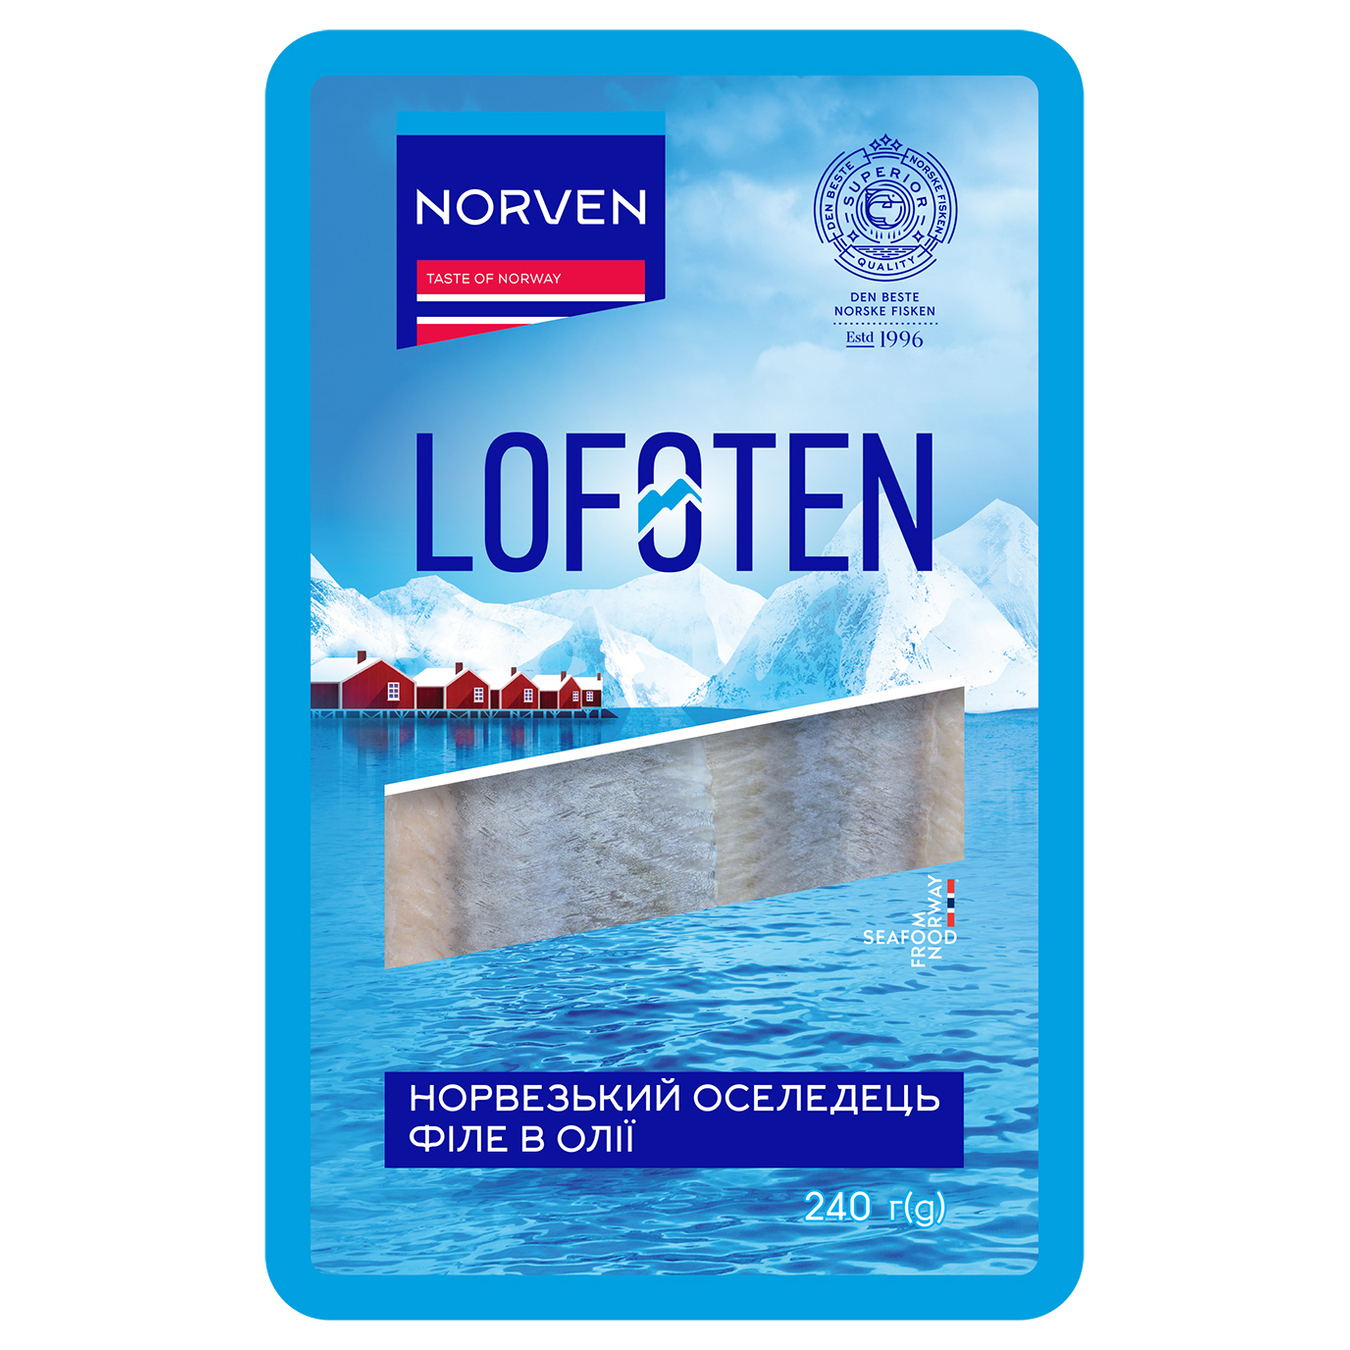 Сельдь Norven Lofoten филе в масле 240г